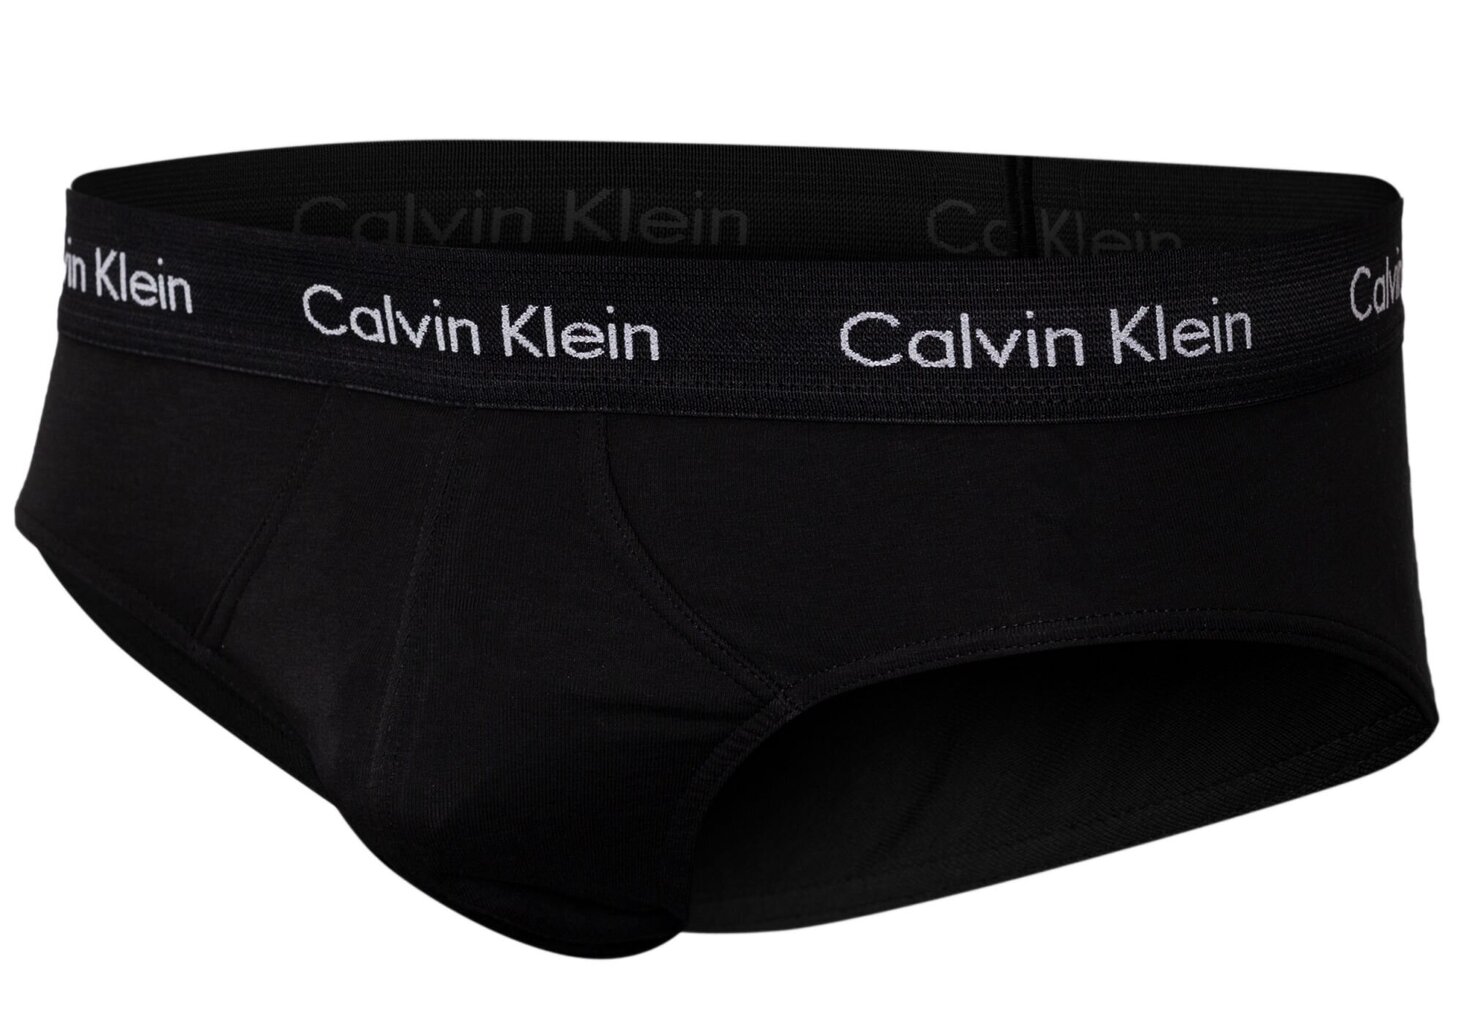 Apakšbikses vīriešiem Calvin Klein, kokvilnas, elastīgas, 3 gab., zilas/tumši zilas/melnas U2661G 4KU 14057 cena un informācija | Vīriešu apakšbikses | 220.lv